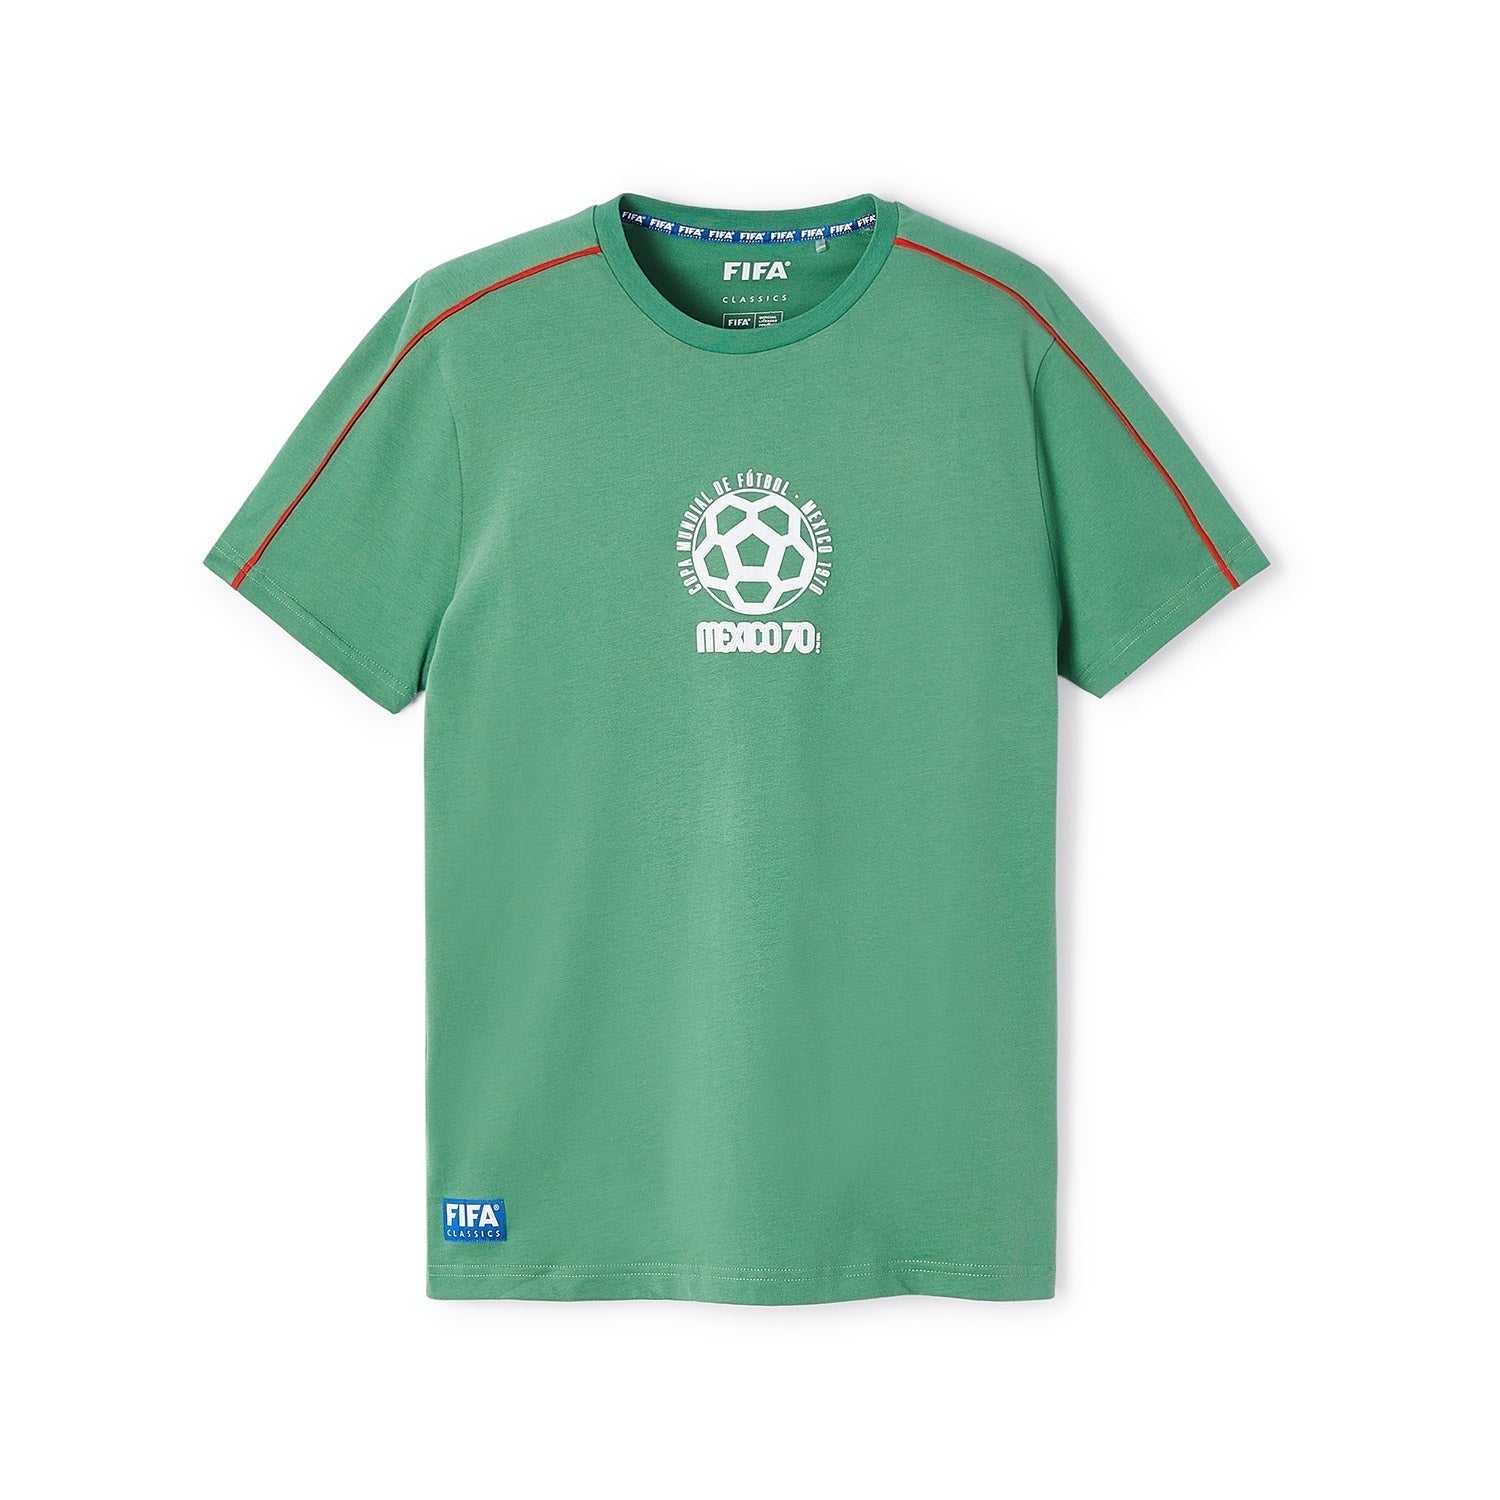 FIFA Rewind Mexico '70 - Emblem Text T-Shirt